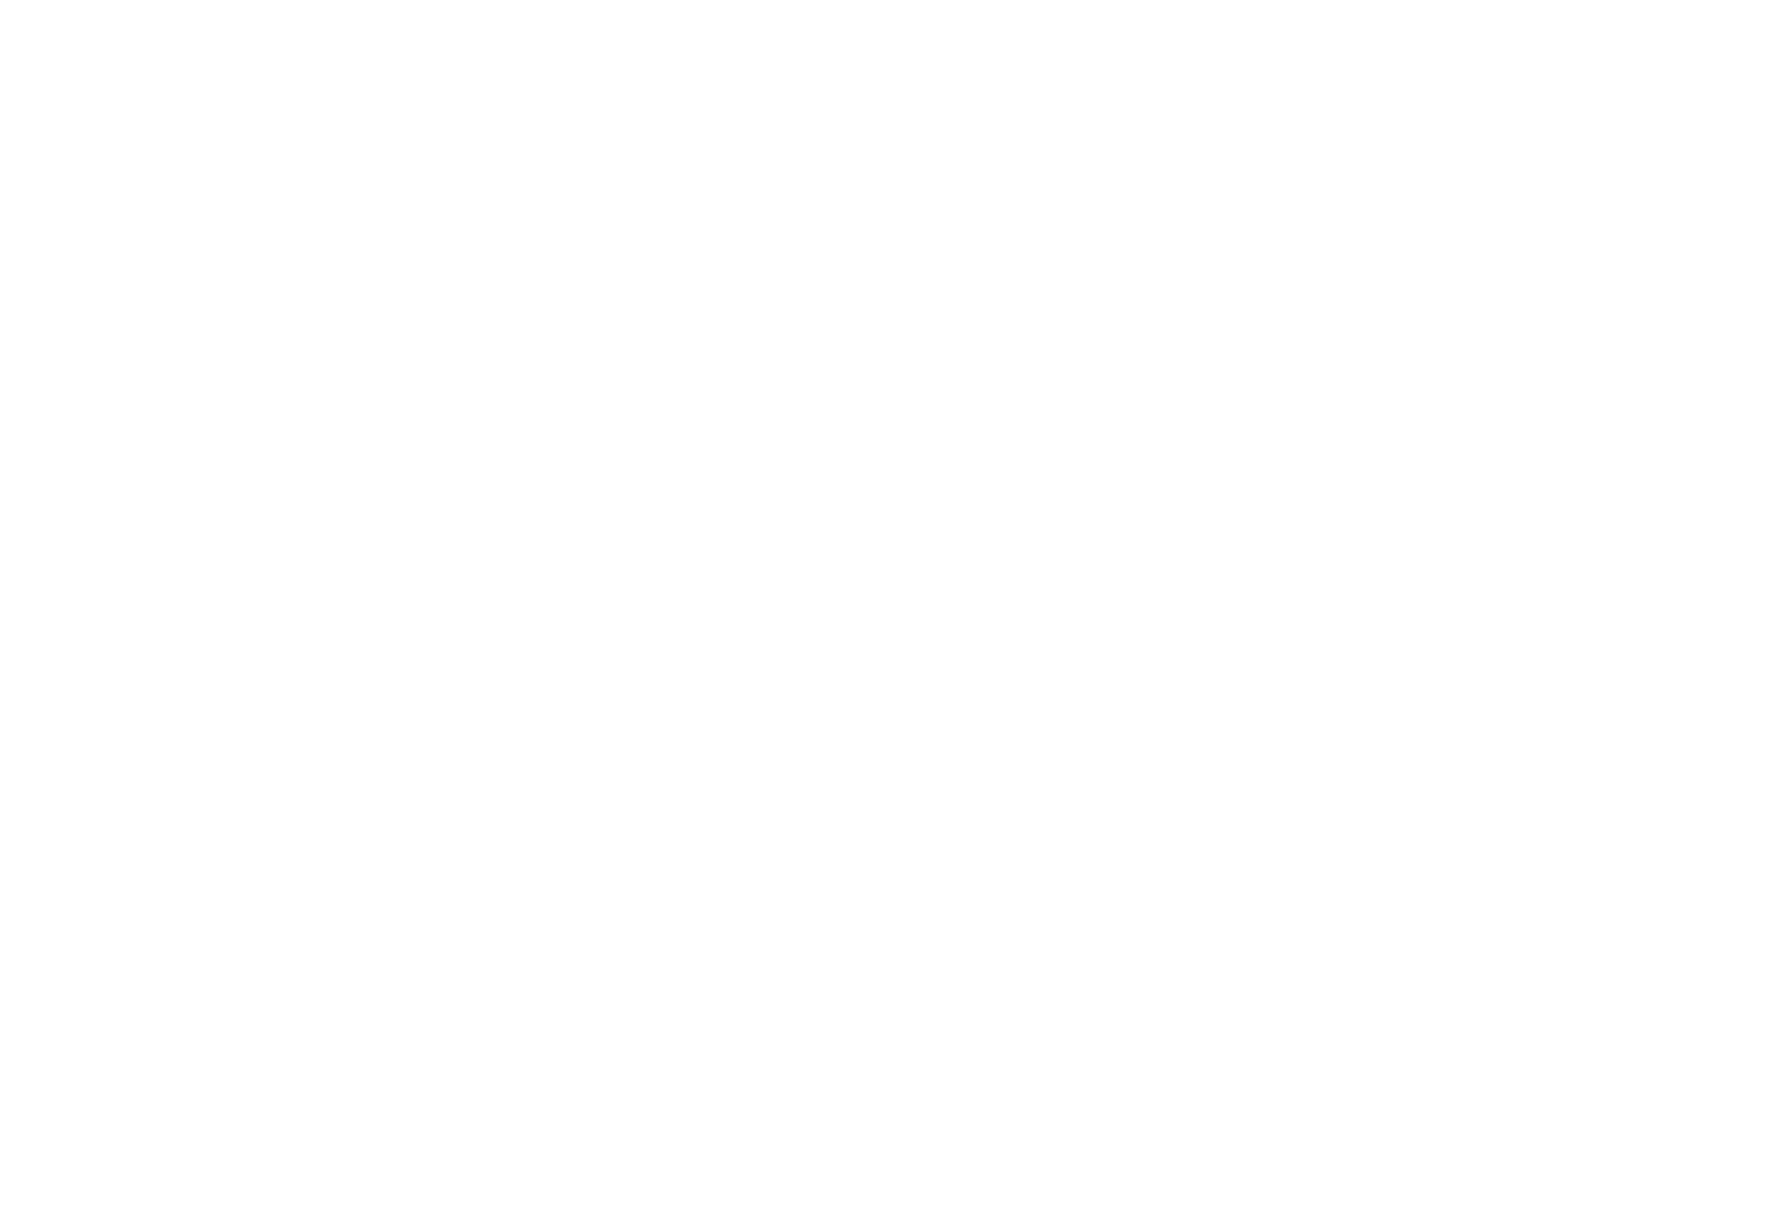 NCPI